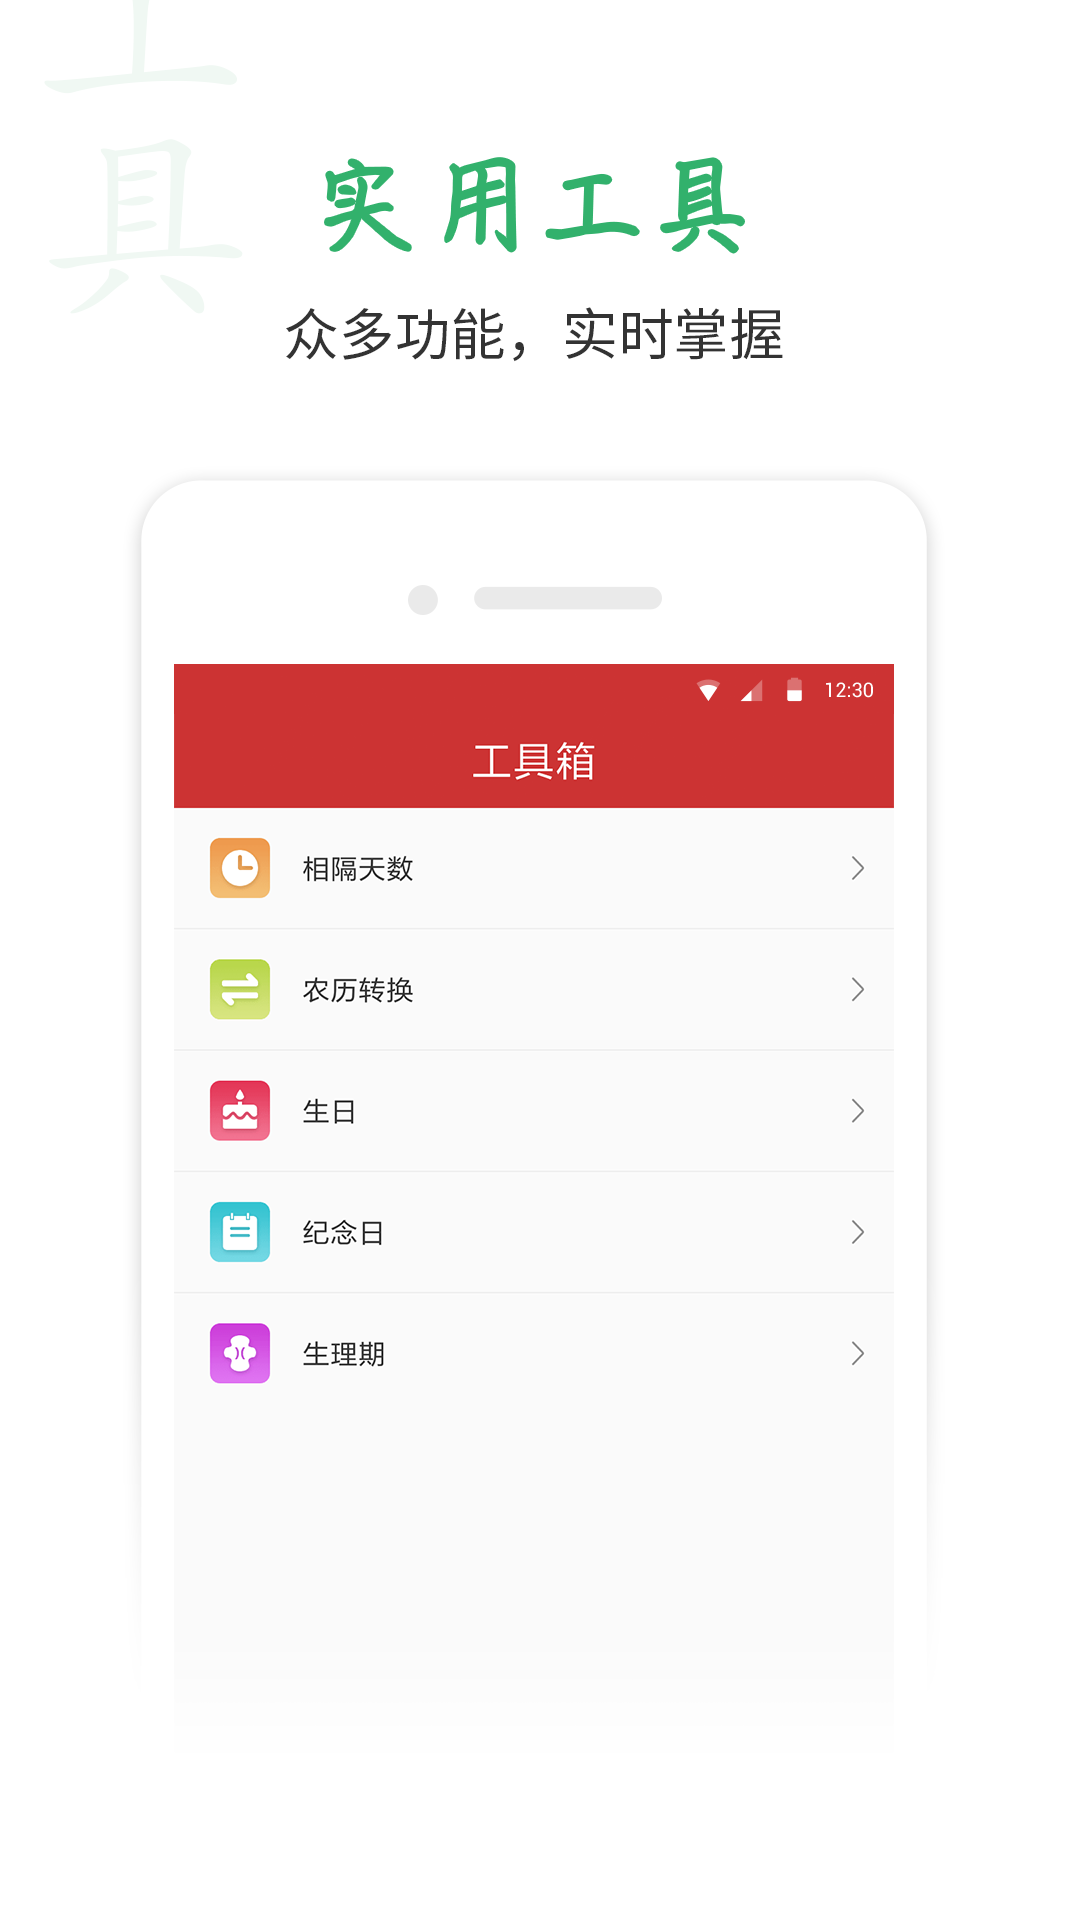 桔子万年历app安卓版下载安装